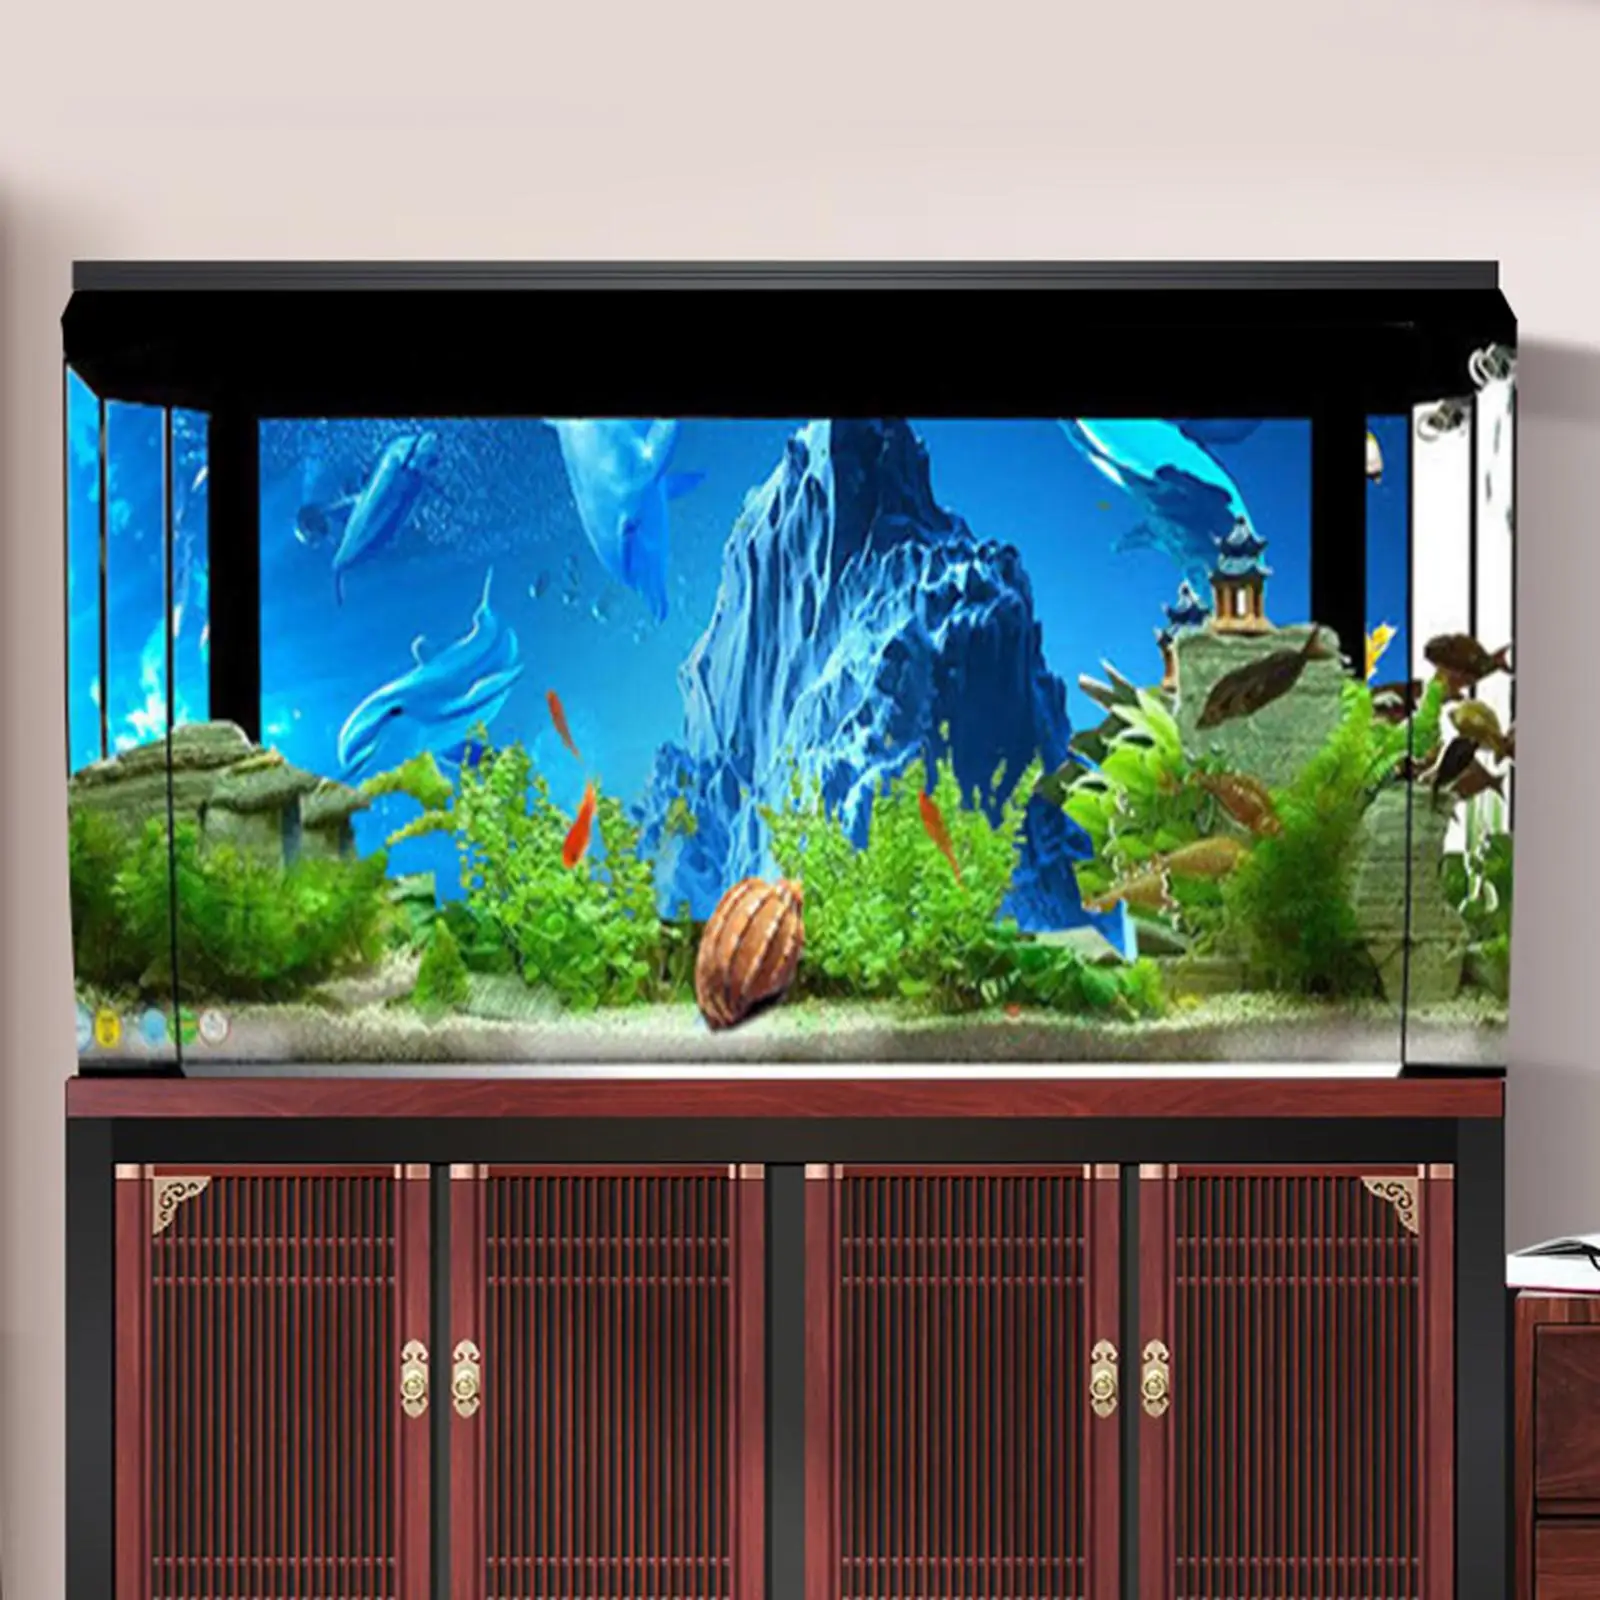 Aquarium Background Poster Painting Landscape Fish Tank for Aquarium Fish Tank Decoration